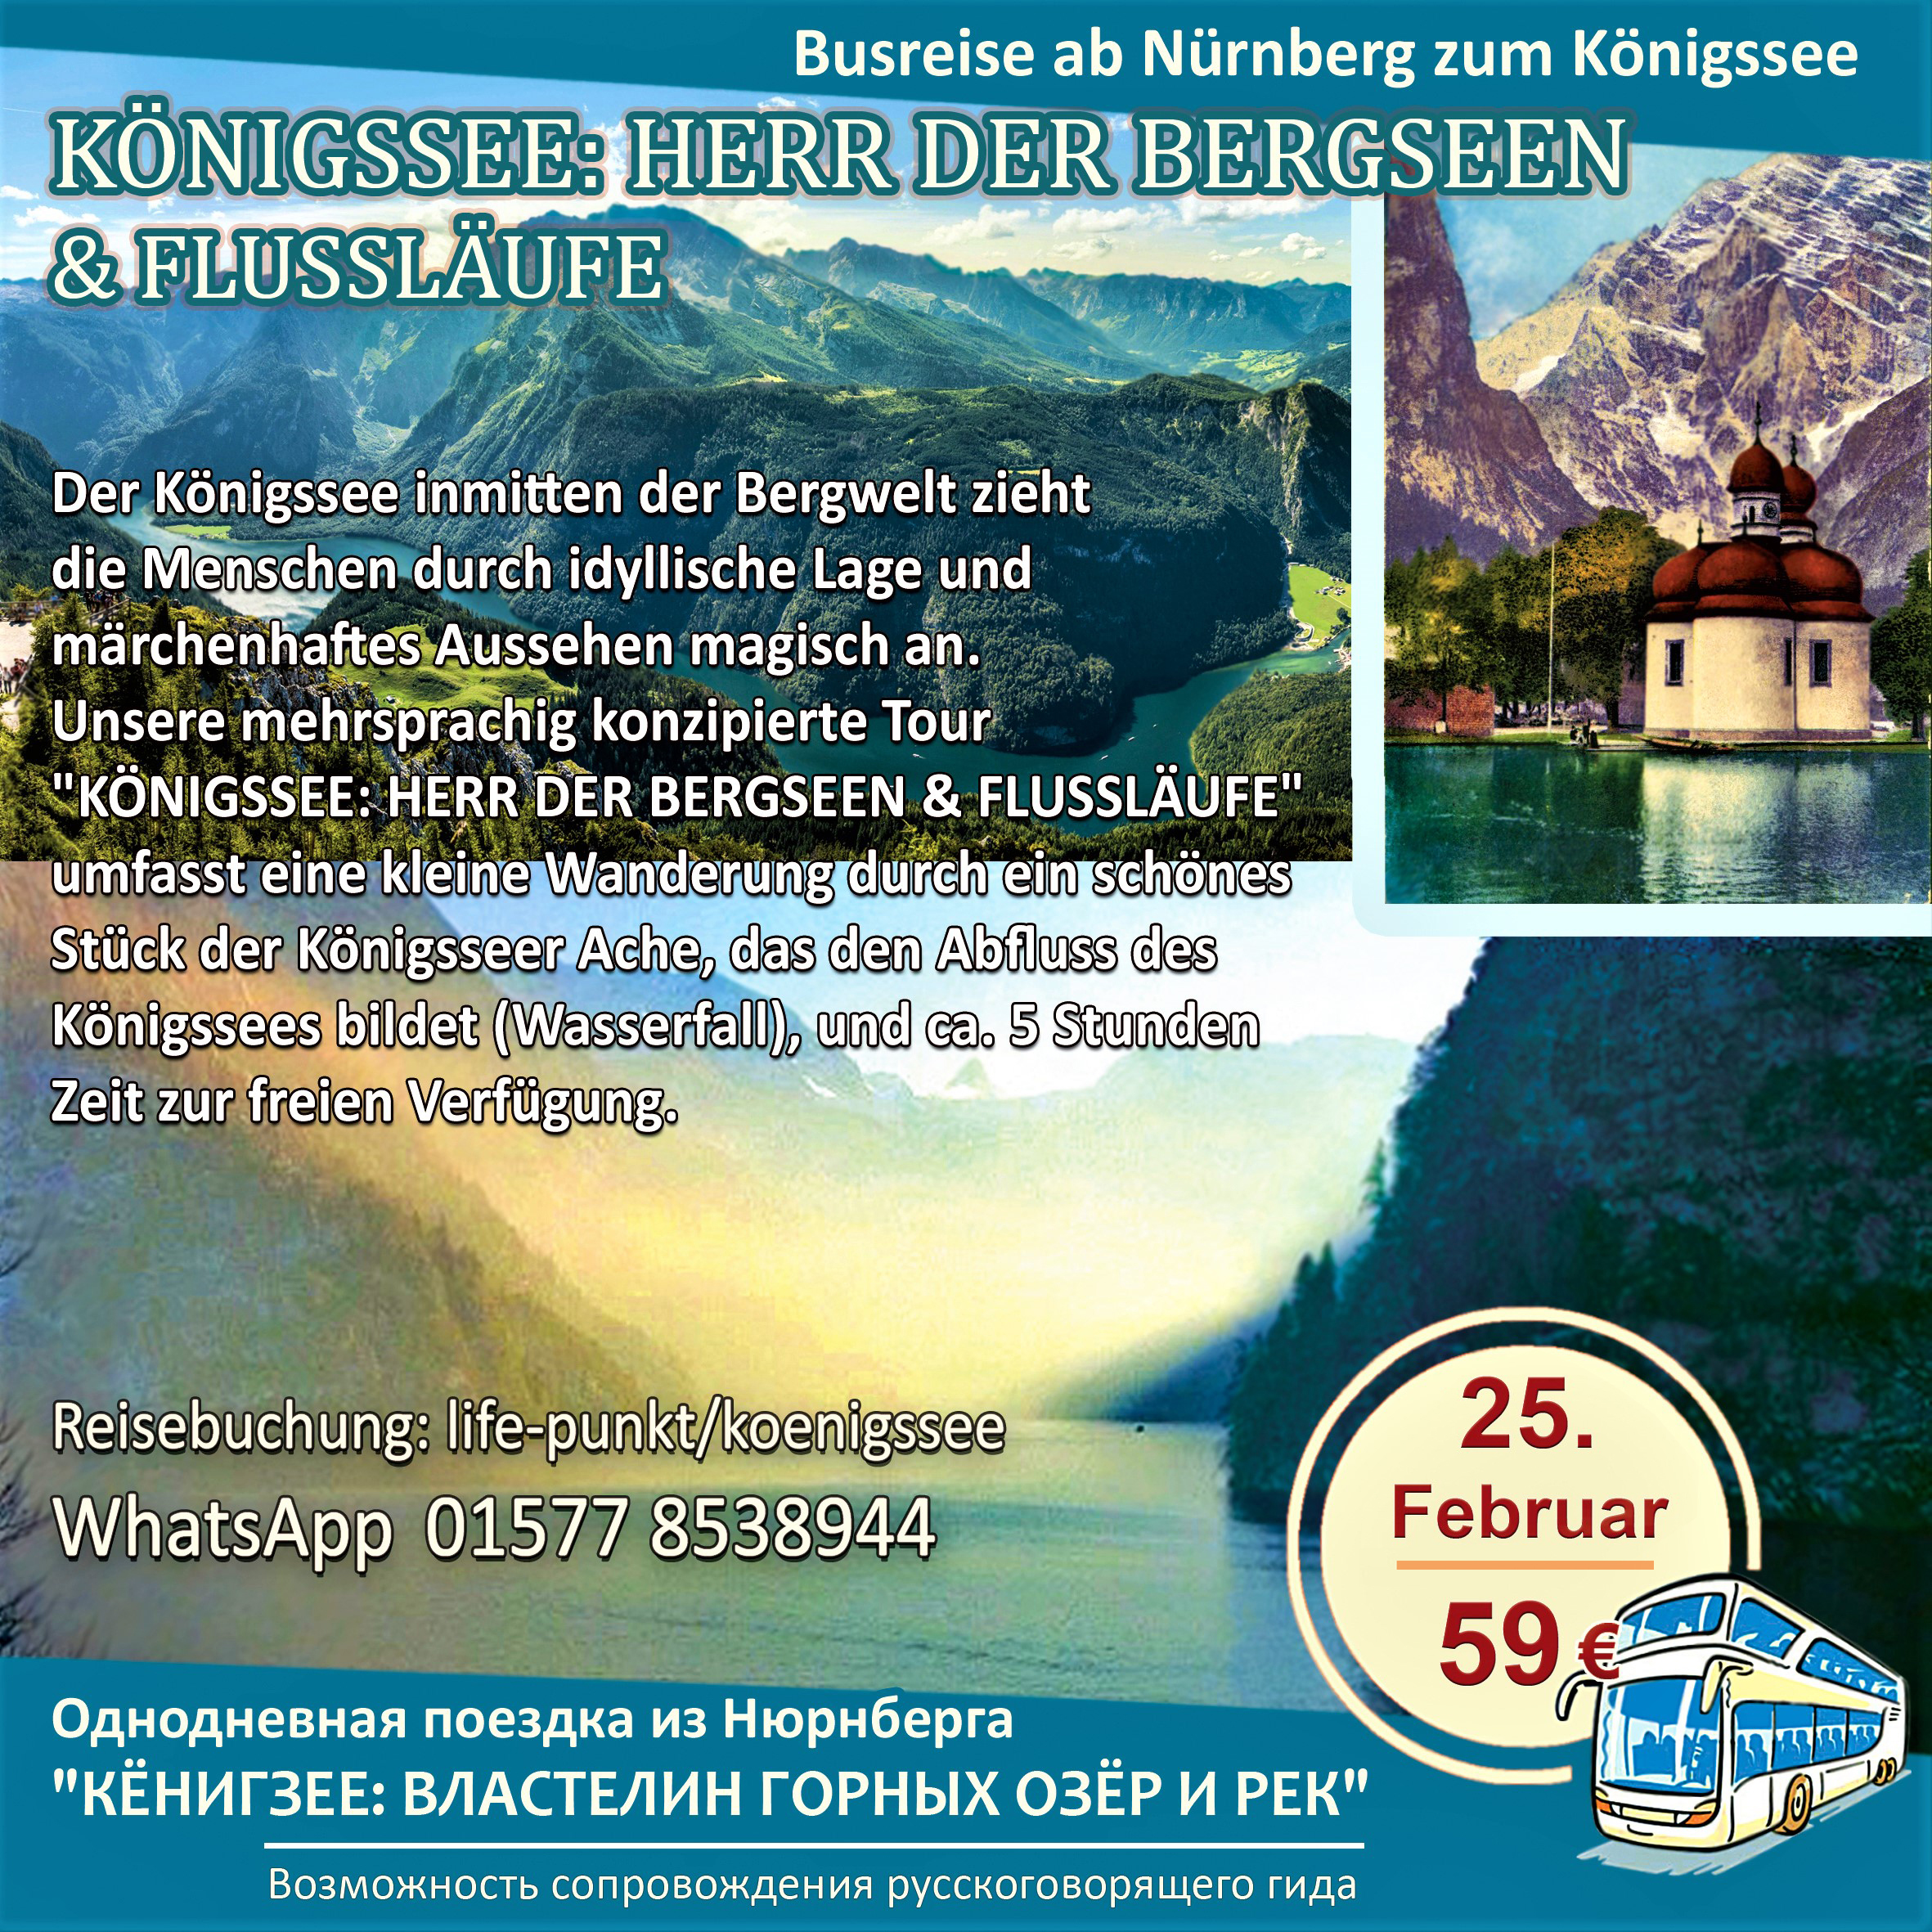 Der Königssee: Ihre Majestät im Berchtesgadener Land